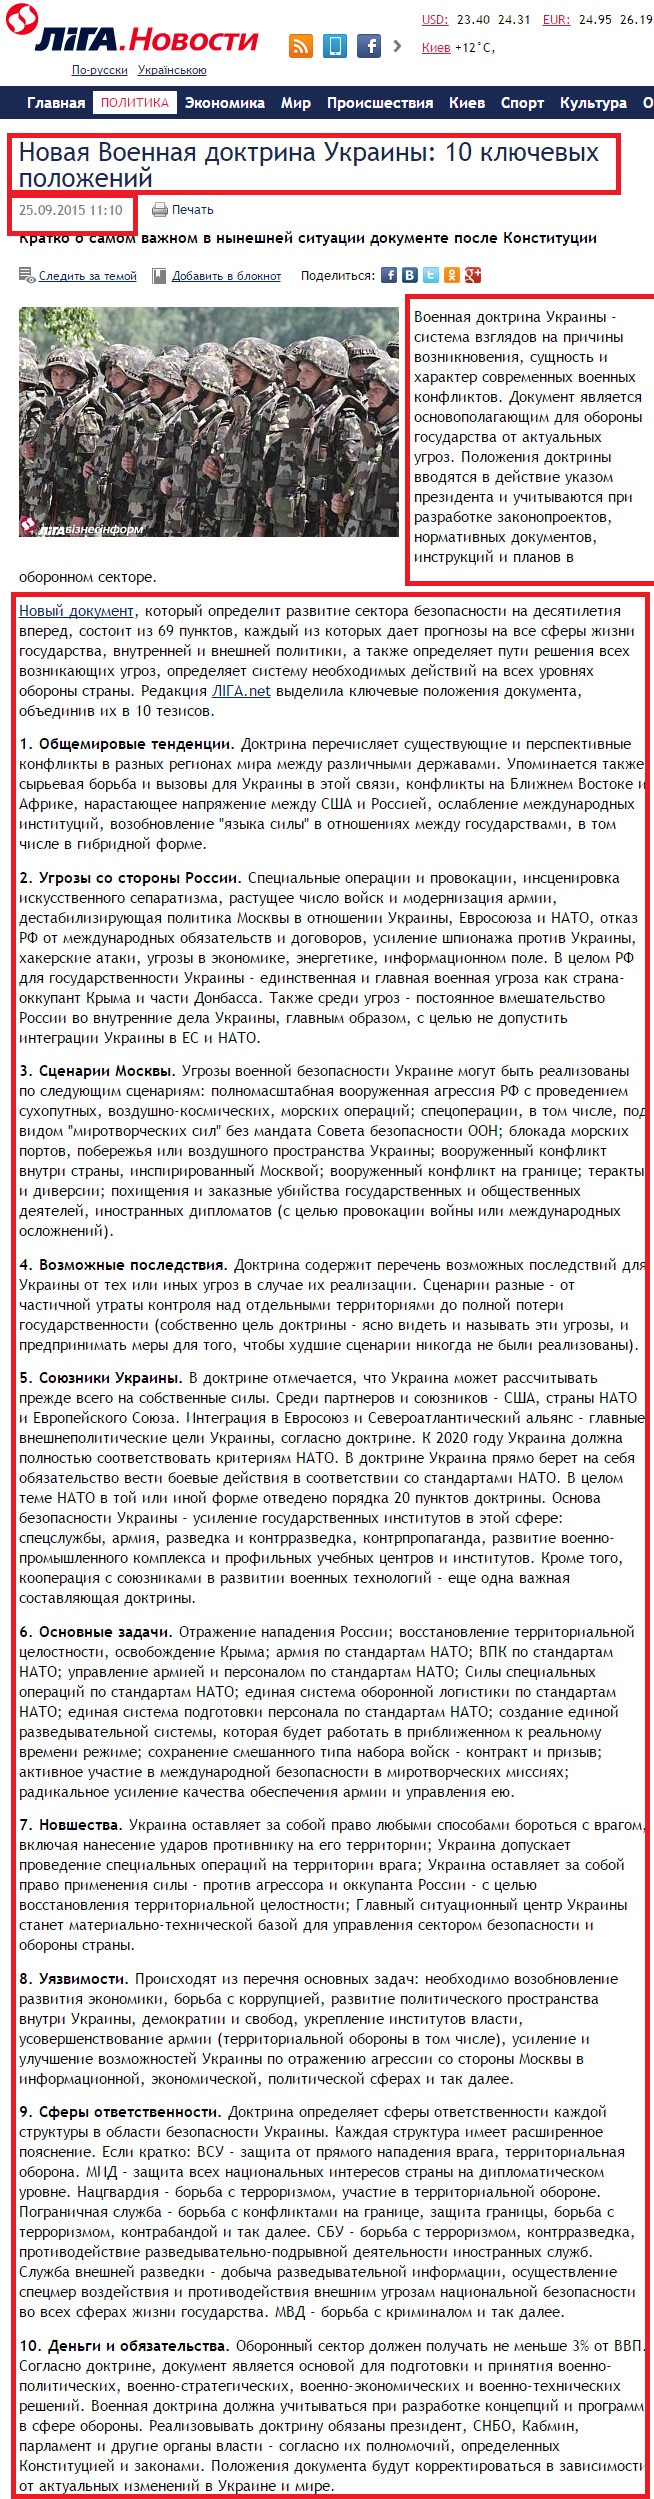 http://news.liga.net/articles/politics/6724892-novaya_voennaya_doktrina_ukrainy_10_klyuchevykh_polozheniy.htm